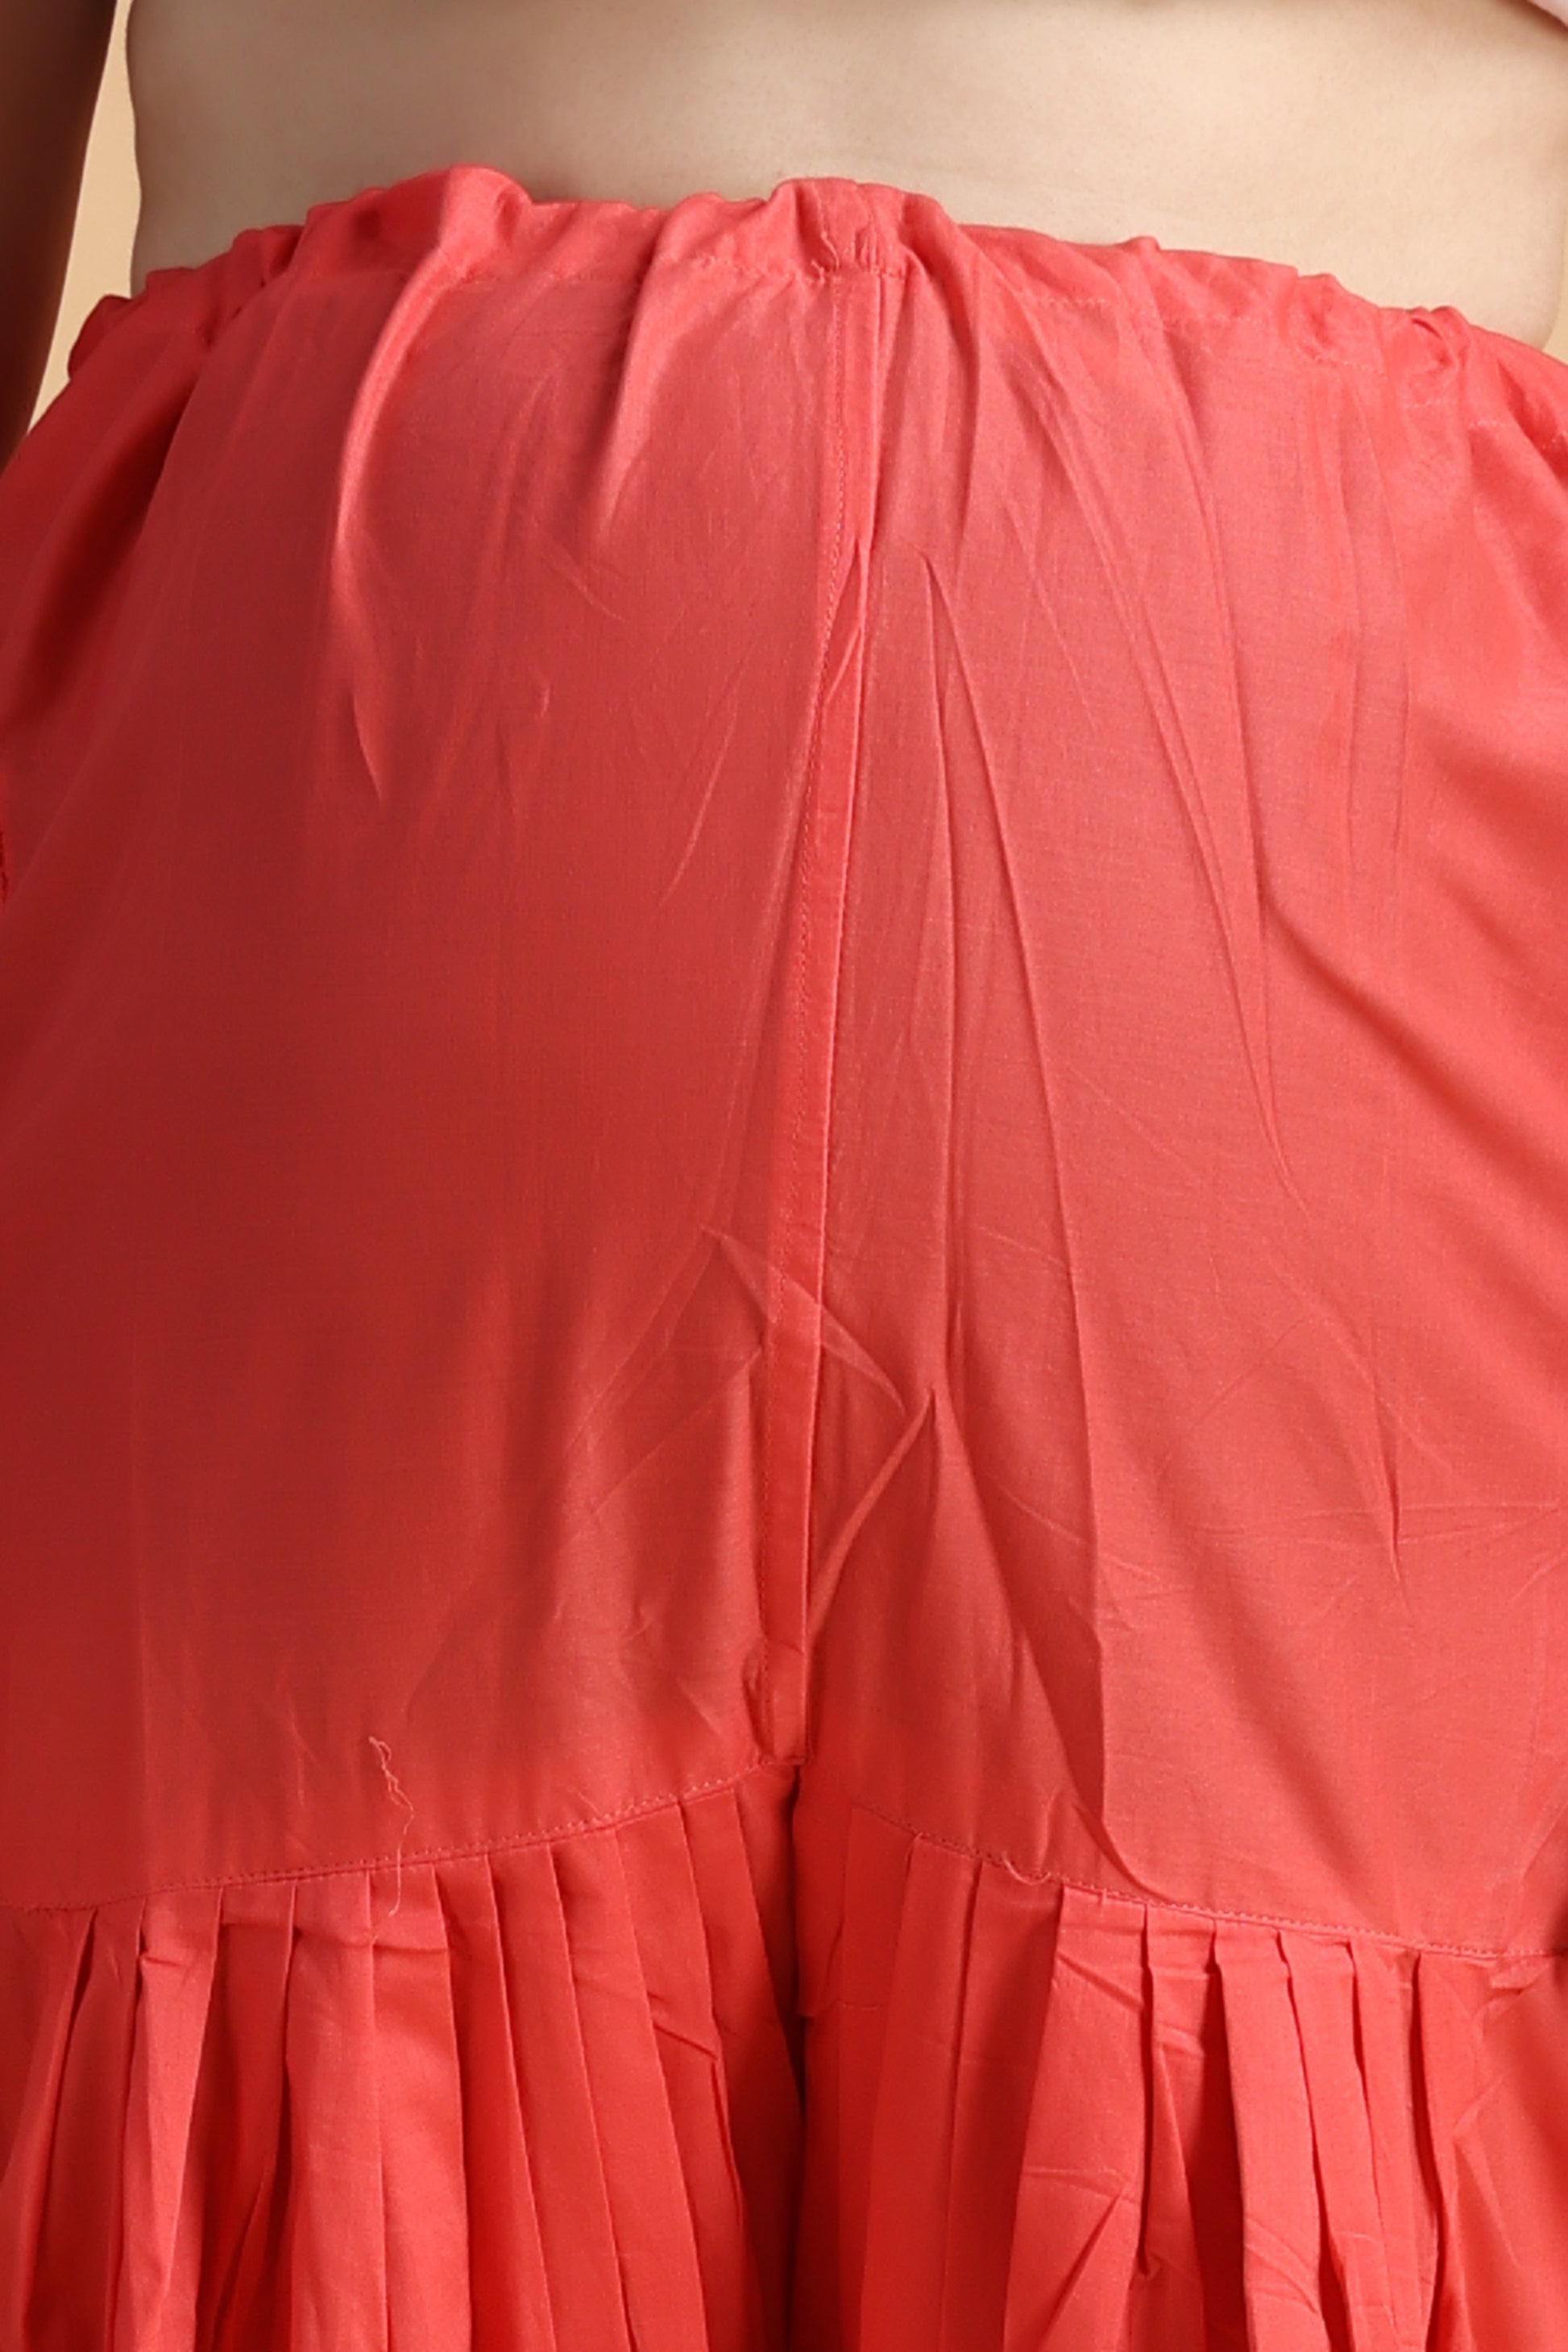 Women Plus Size Red Maternity Bottom Wear Online | Apella